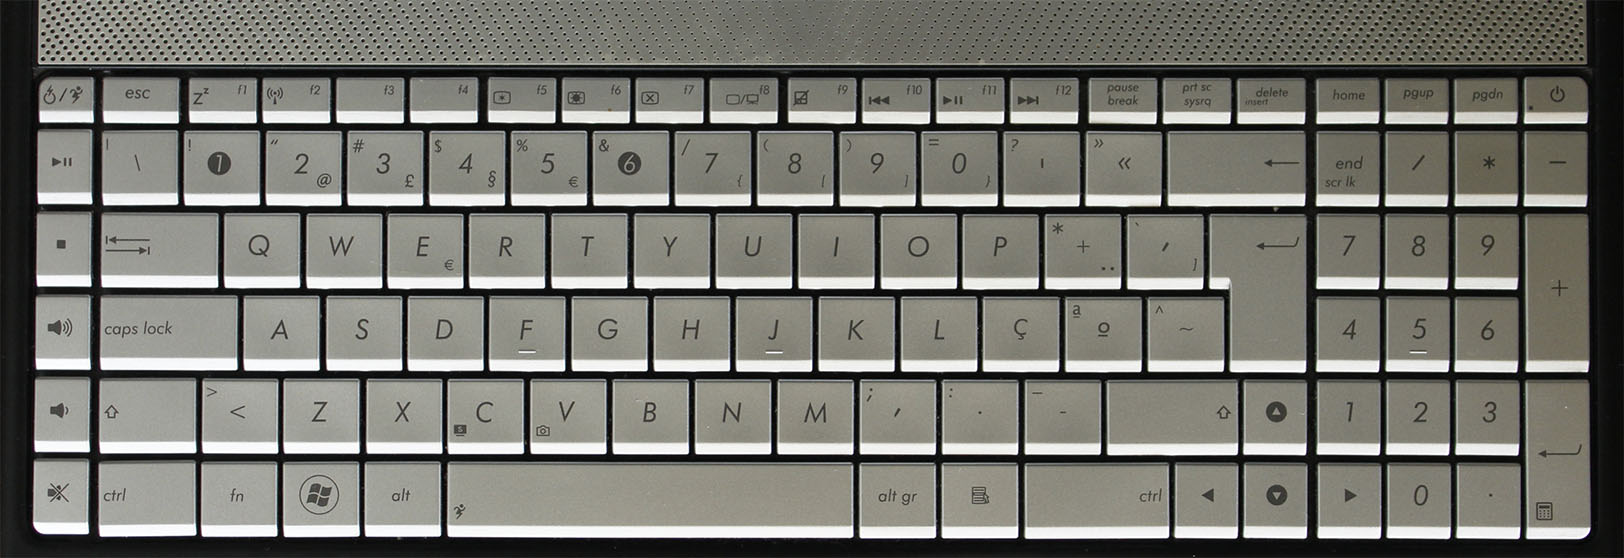 Figura 2 - Exemplo teclado de Computadores Portáteis